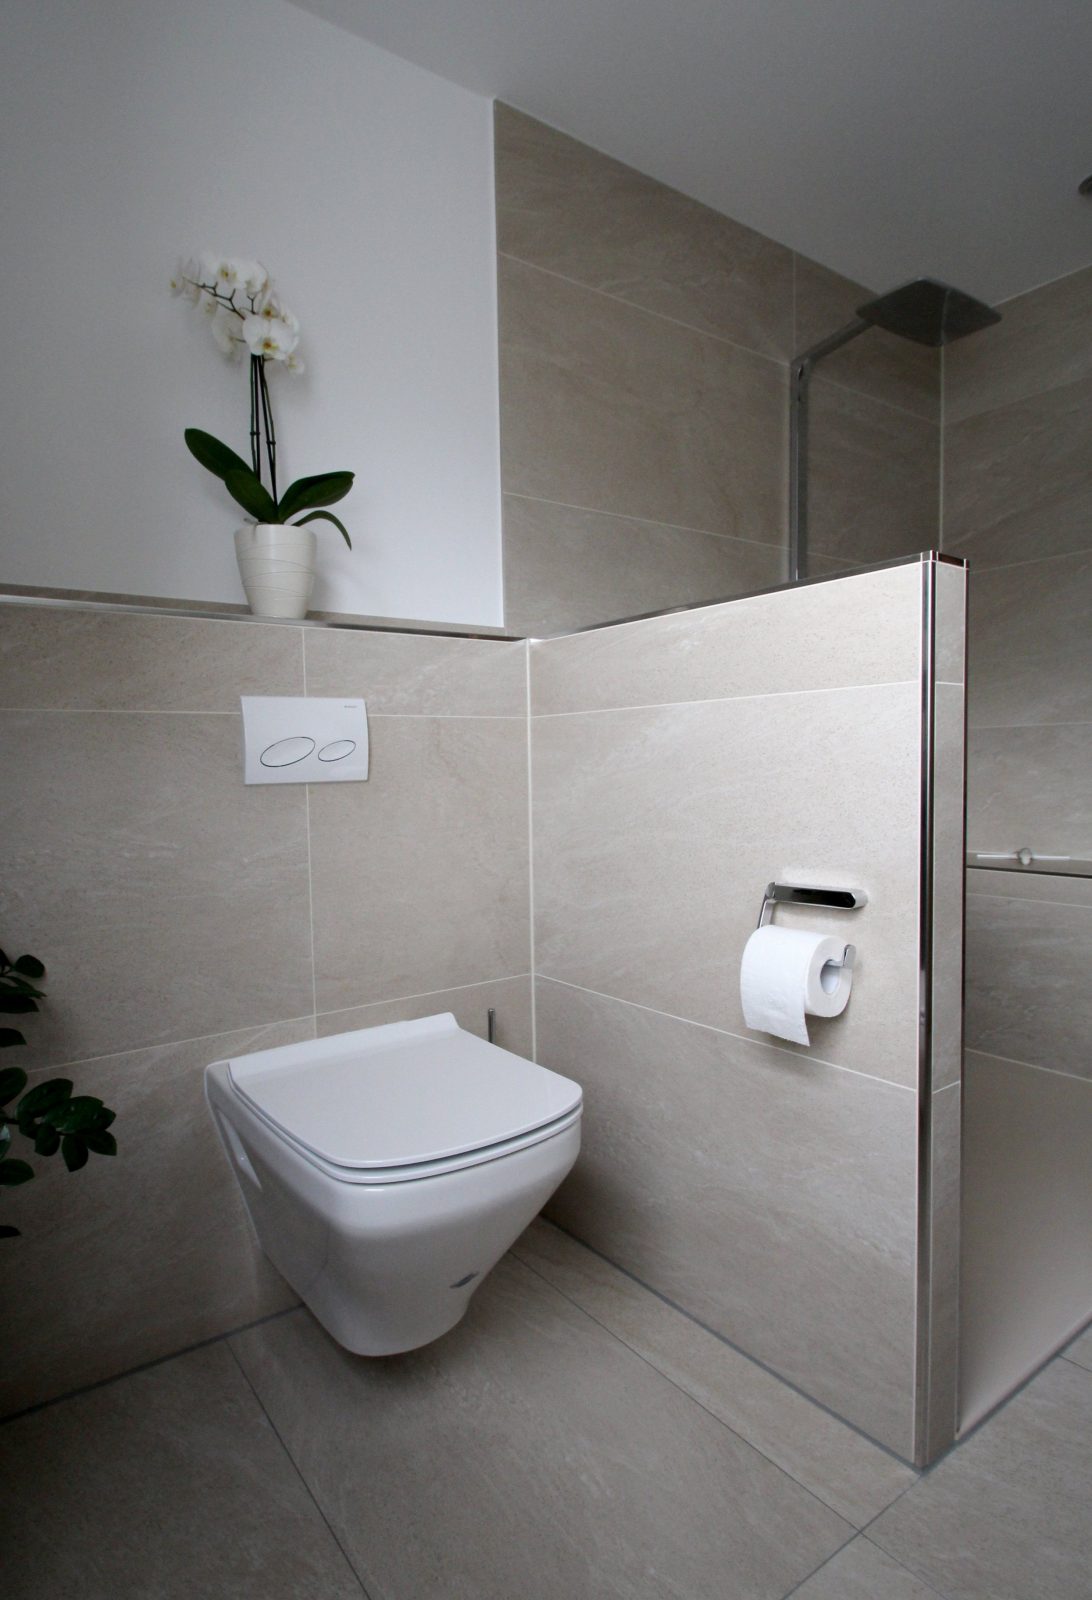 Seniorengerechtes Bad In Naturtönen  Duschideen  Badezimmer von Duschideen Für Kleine Bäder Bild